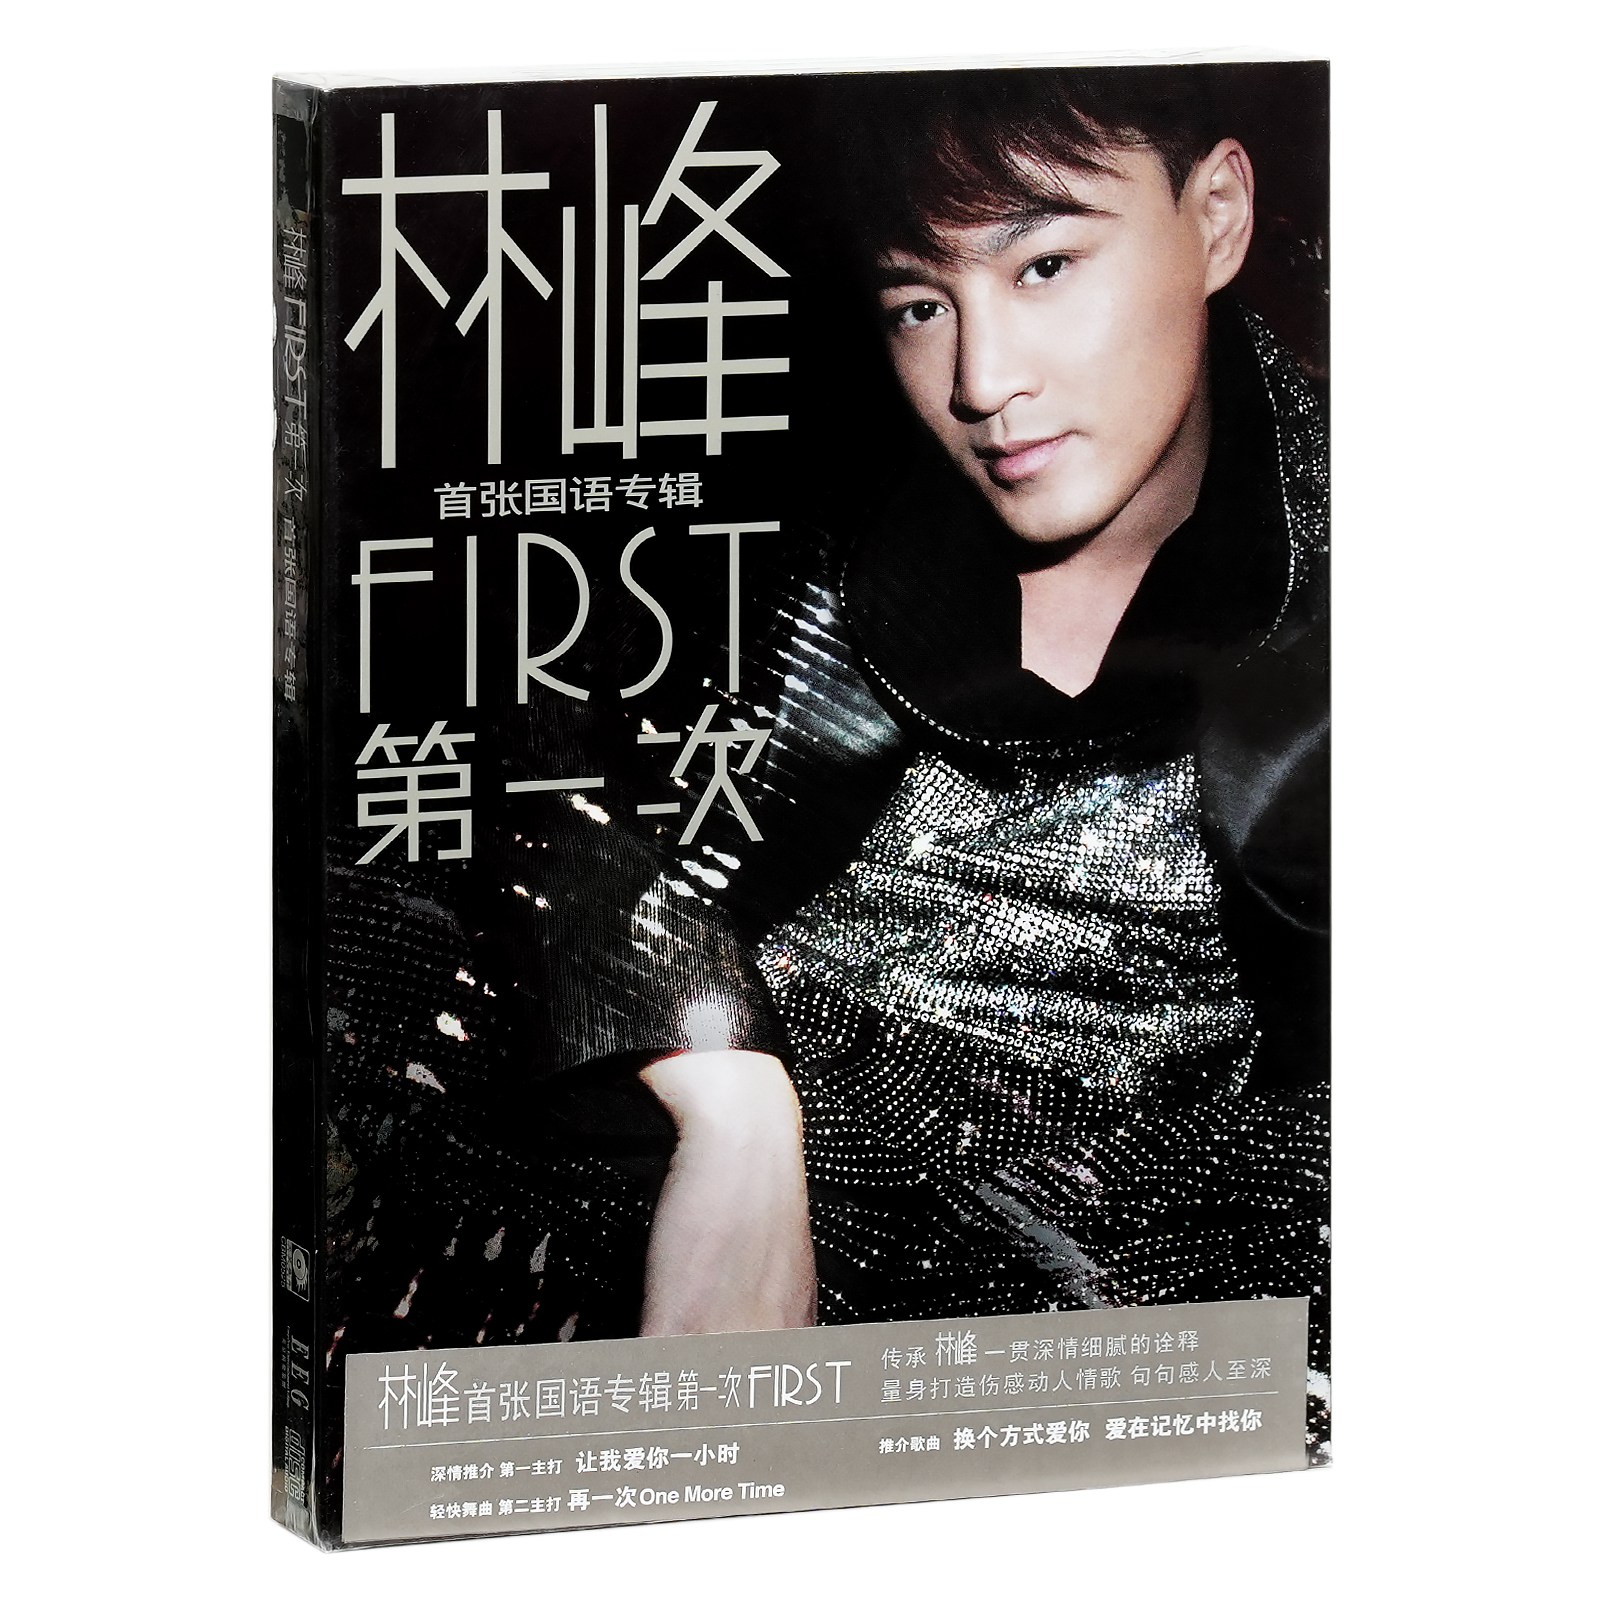 正版林峰 林峯 第一次 2011专辑 FIRST 唱片CD+写真歌词册